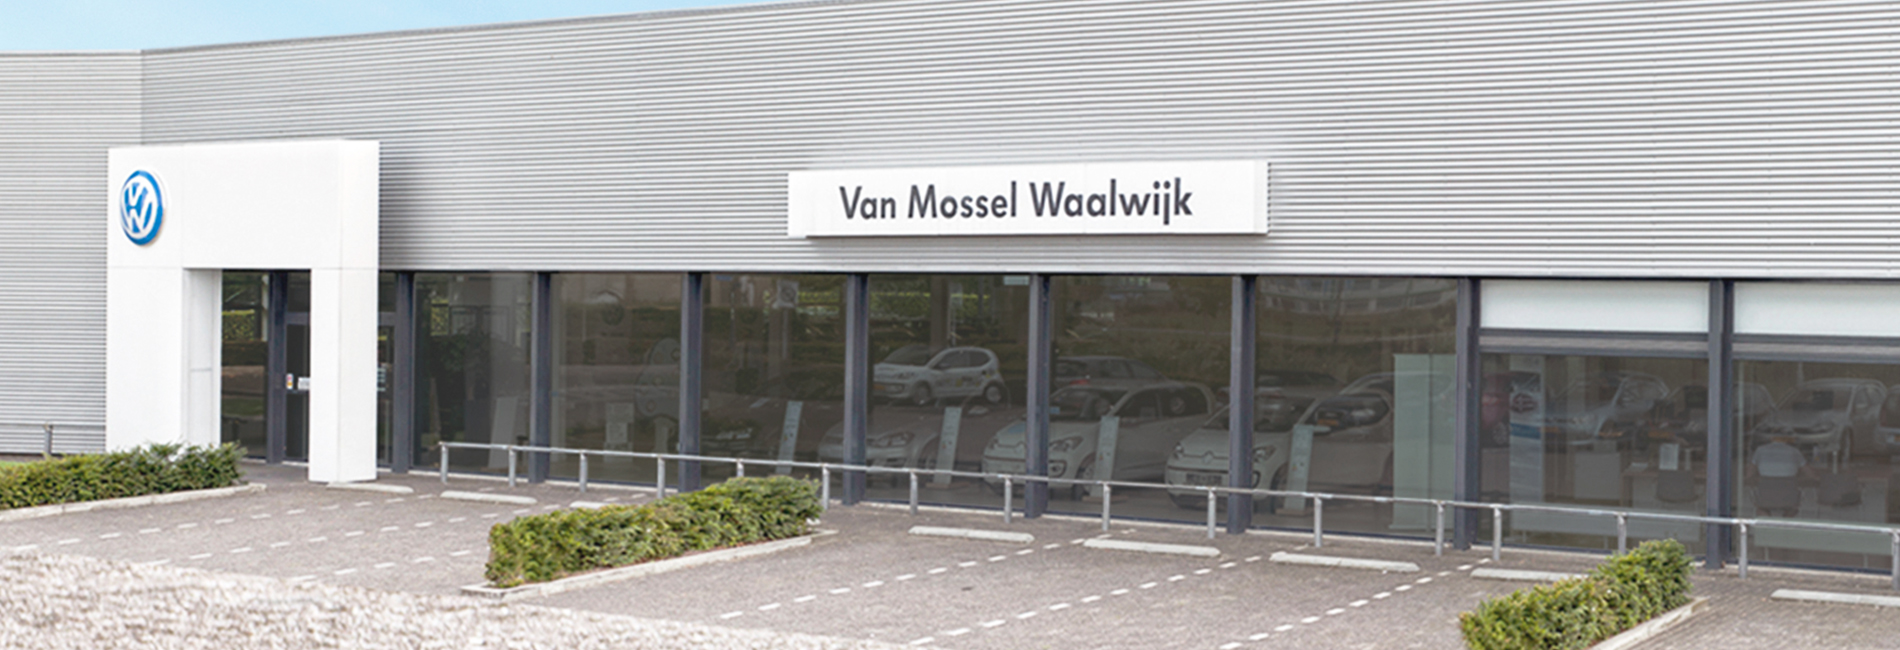 vanmossel_waalwijk